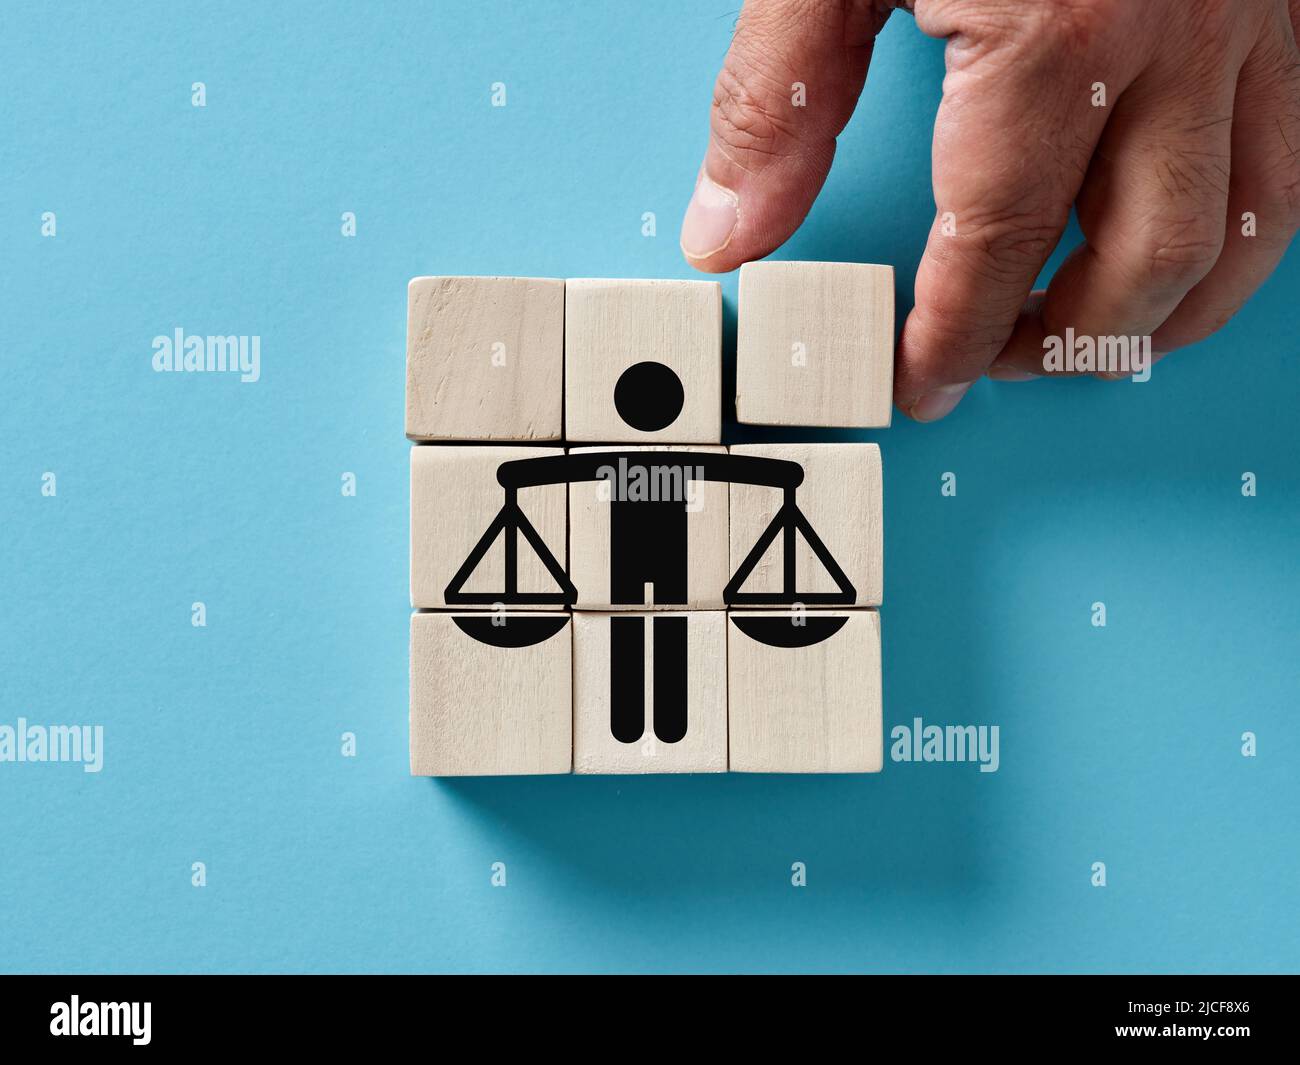 Main de sexe masculin organisant des cubes en bois avec l'icône de l'éthique des affaires ou de la justice. Les principes moraux, l'intégrité, la gestion équitable et le concept de justice. Banque D'Images